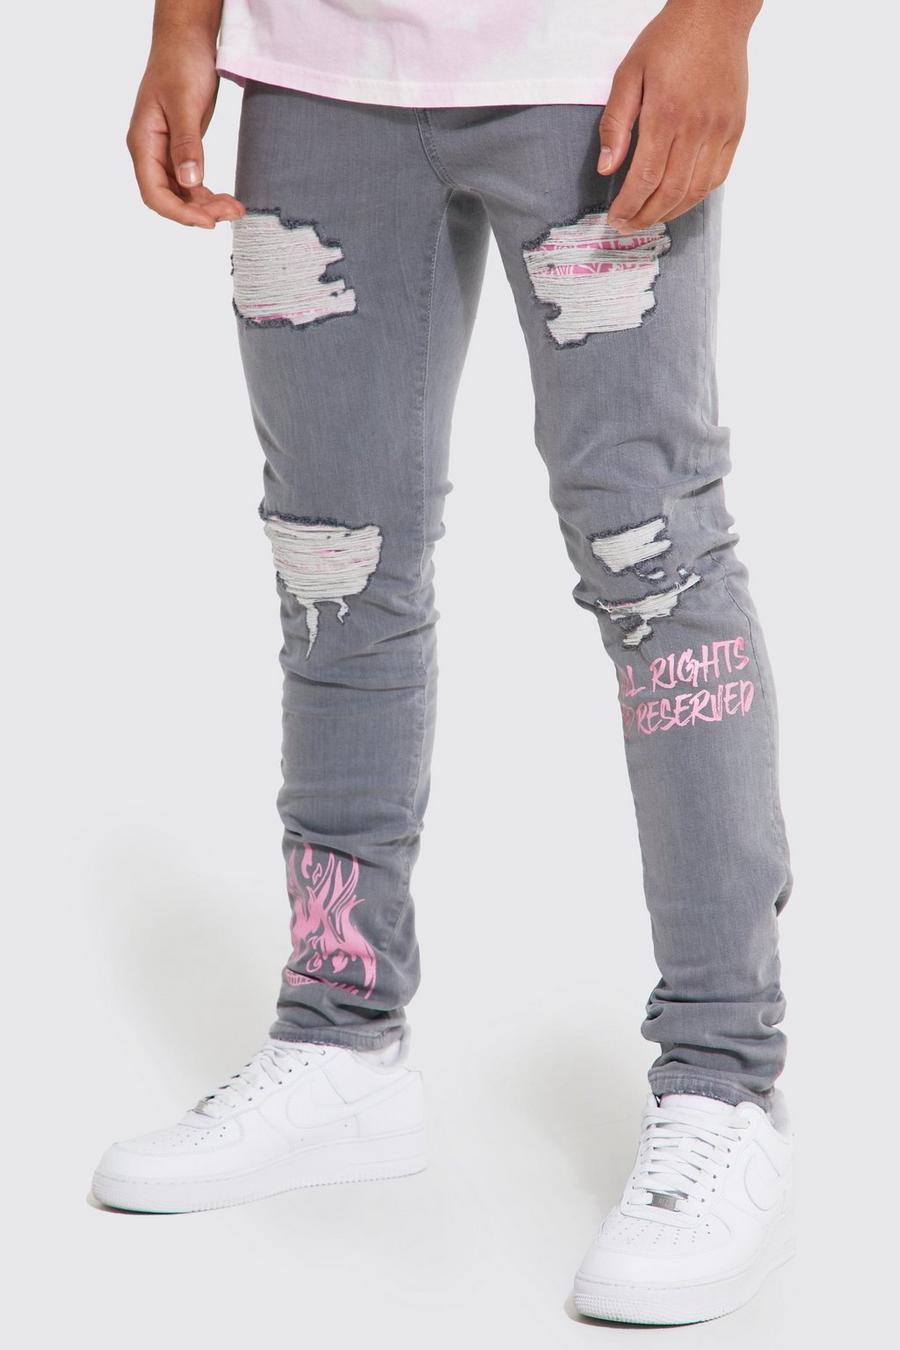 Jeans Tall Skinny Fit stile Graffiti in fantasia a bandana con strappi, Light grey grigio